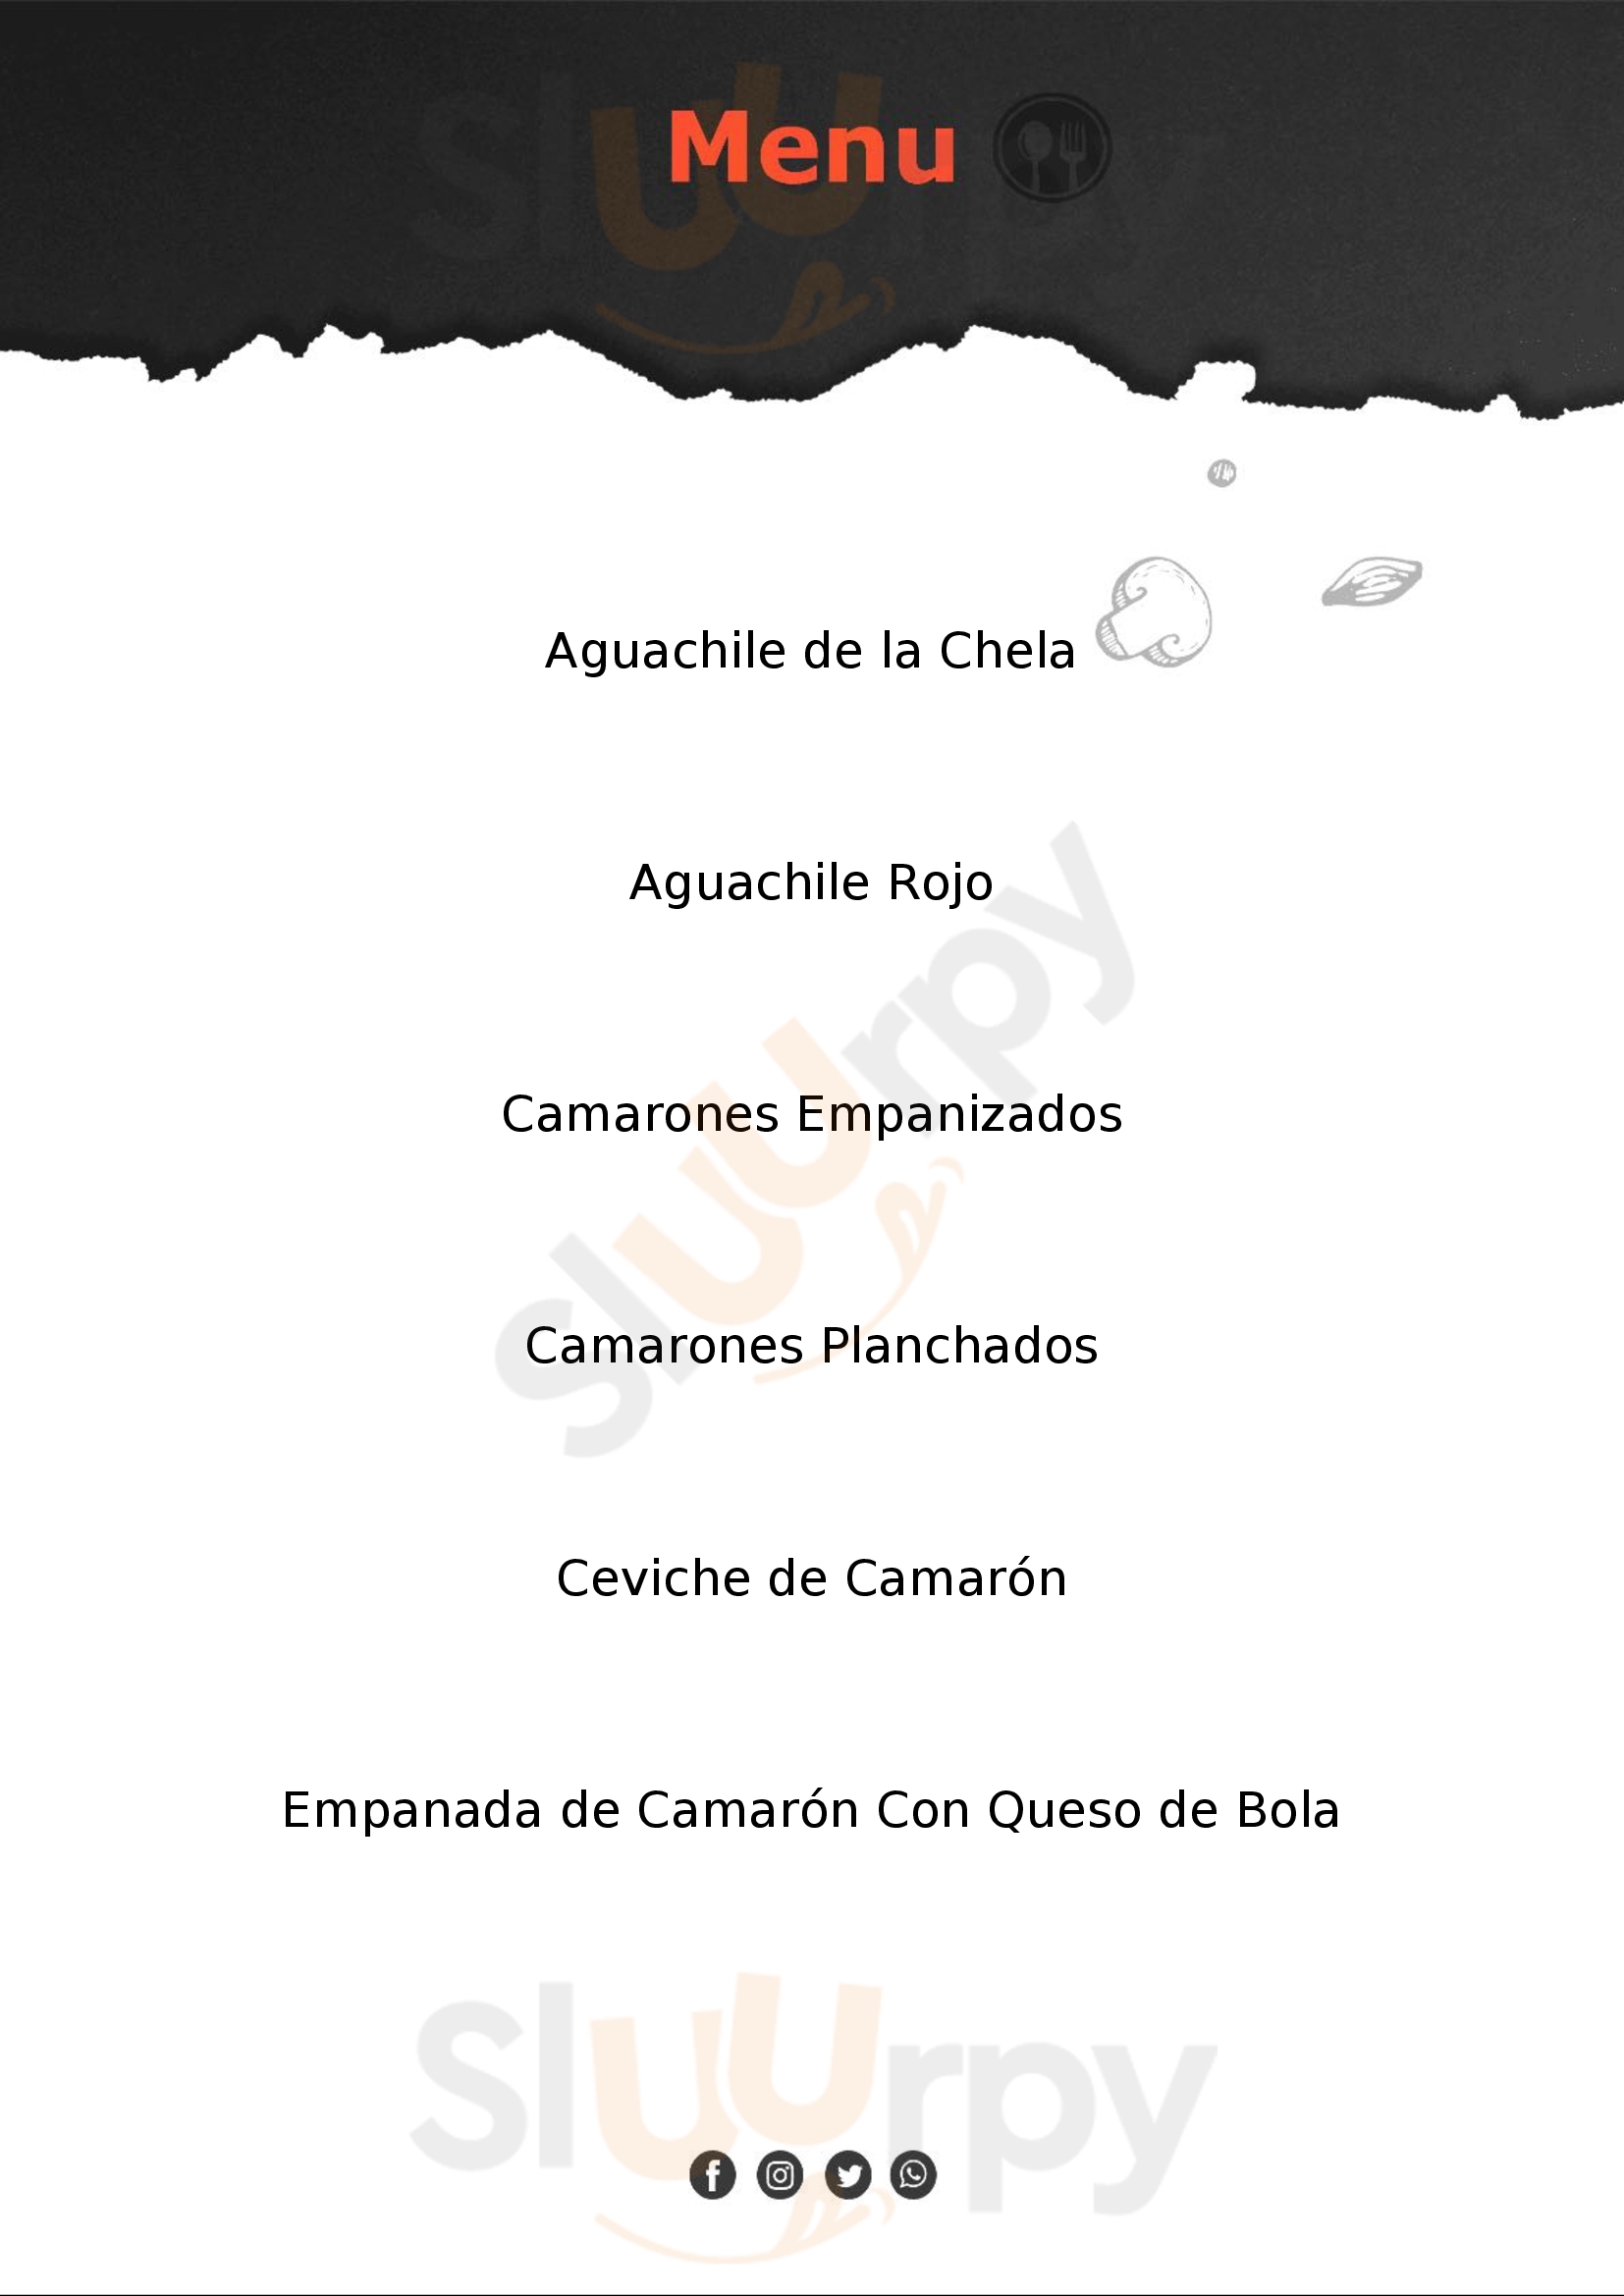 La Chela Marisquería Villahermosa Menu - 1